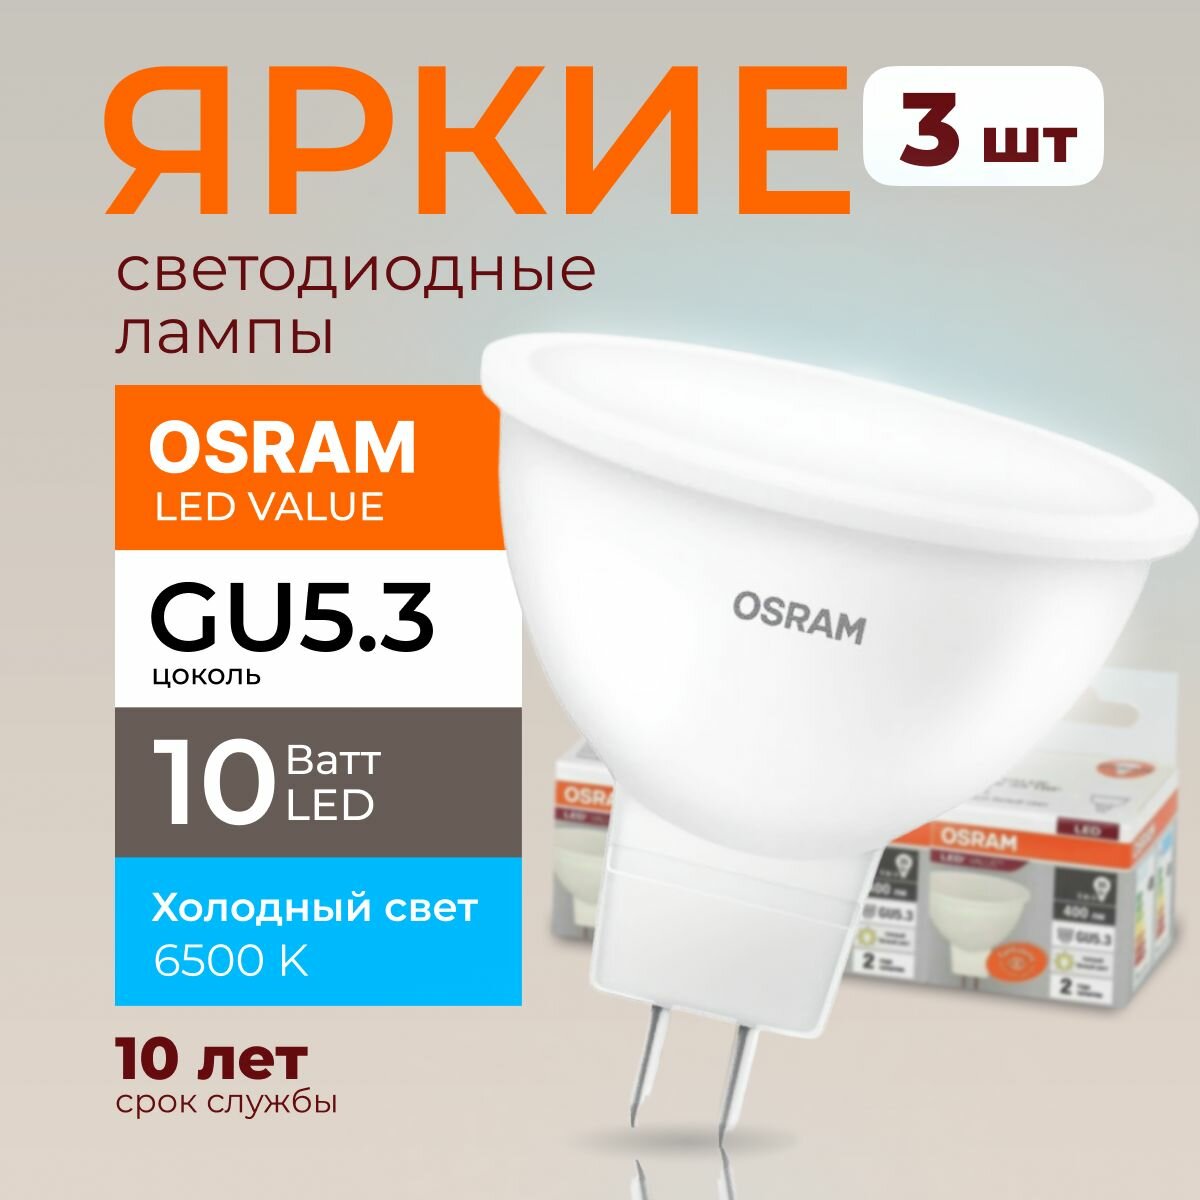 Светодиодная лампочка OSRAM GU5.3 10 Ватт 6500К холодный свет MR16 спот 220-240V LED 865 10W 800лм набор 3шт